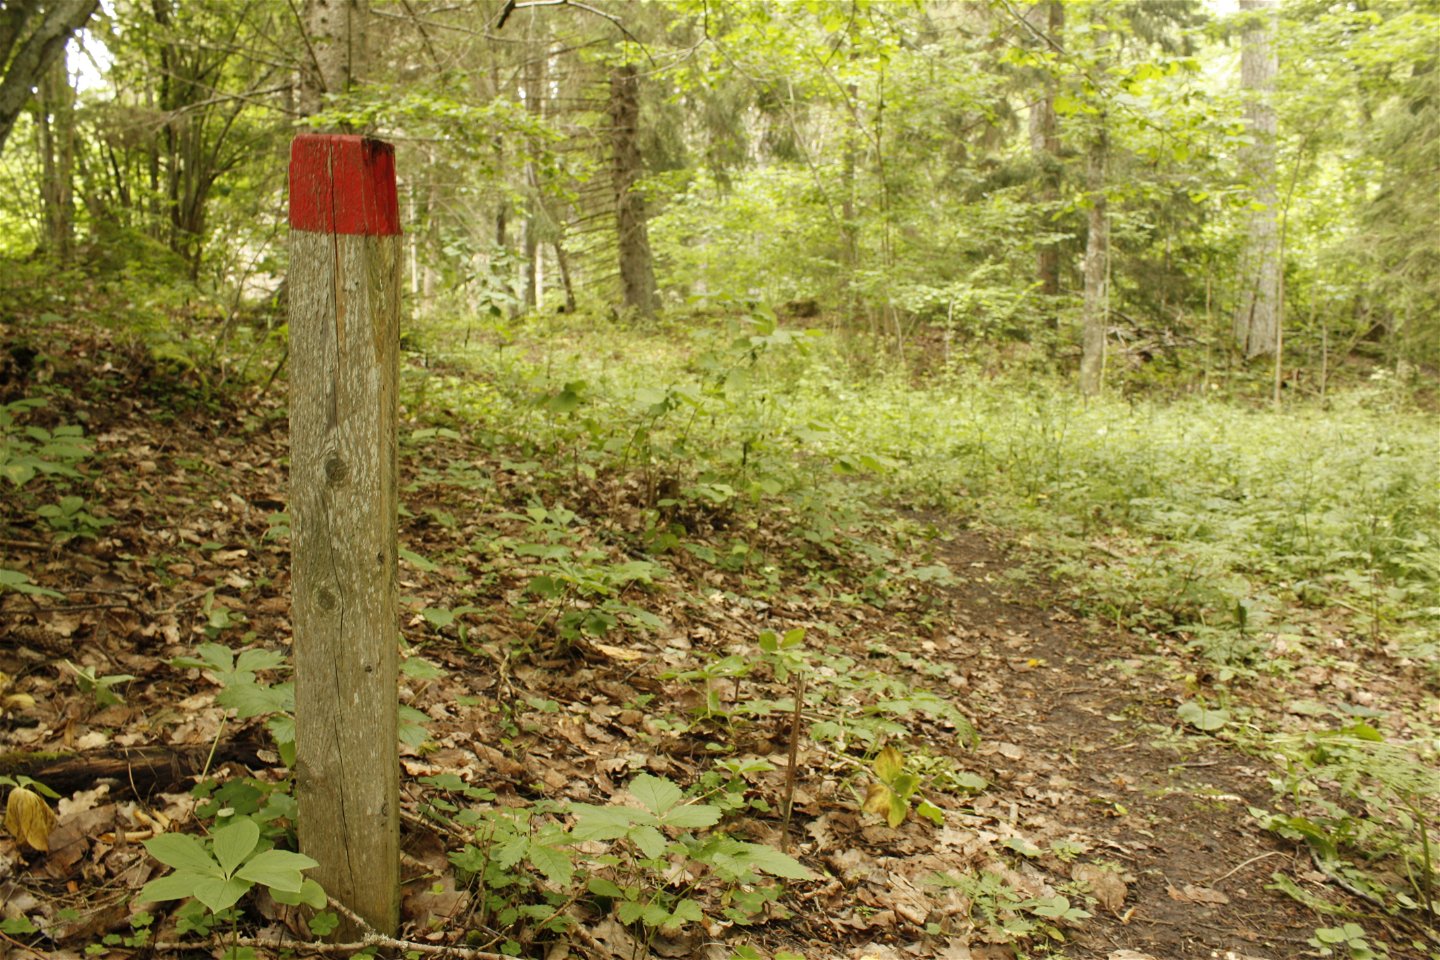 Vid en skogsstig står en kort stolpe med en röd markering på.